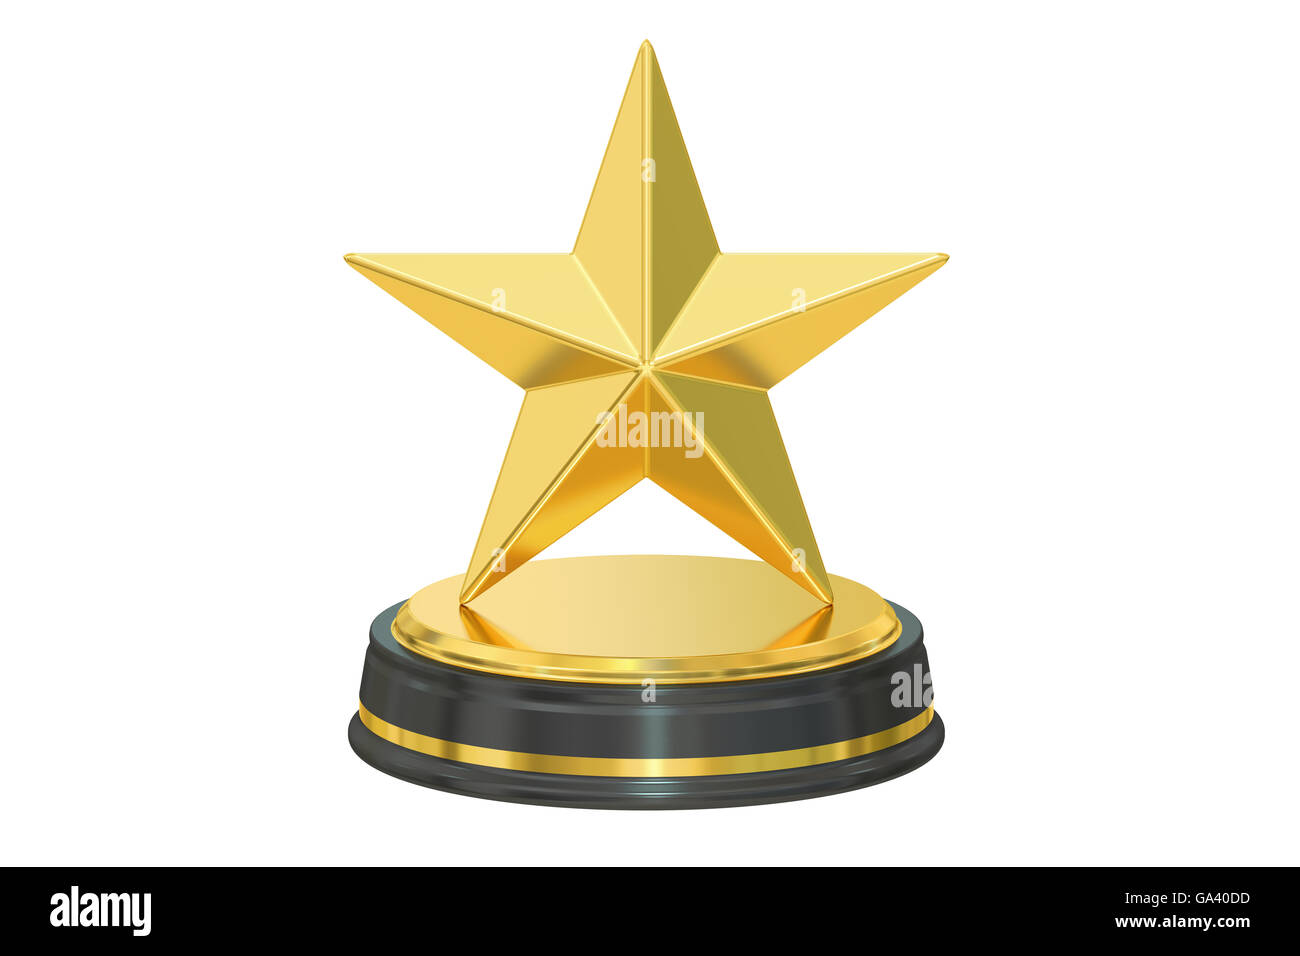 Gold Star Winner Award Medal or Badge' Sticker